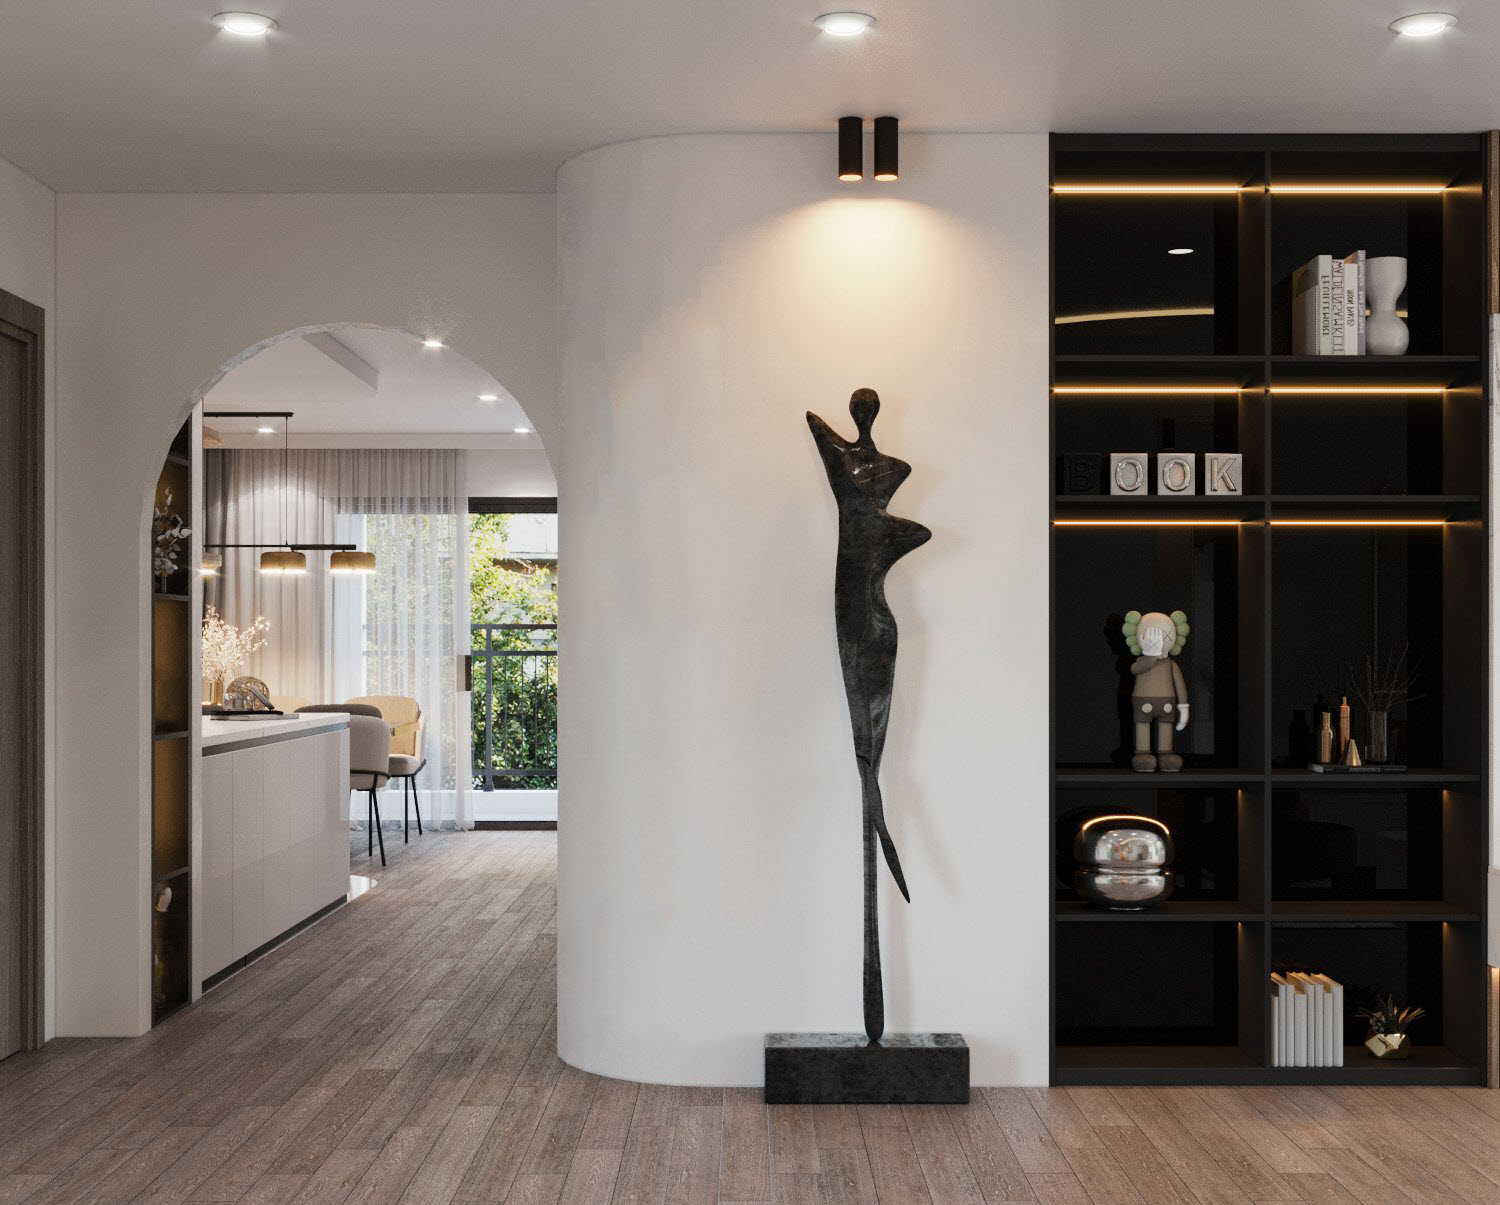 Tượng điêu khắc nghệ thuật tạo điểm nhấn cho khu vực hành lang, không gian chuyển tiếp giữa phòng khách và khu bếp - phòng ăn bên trong.